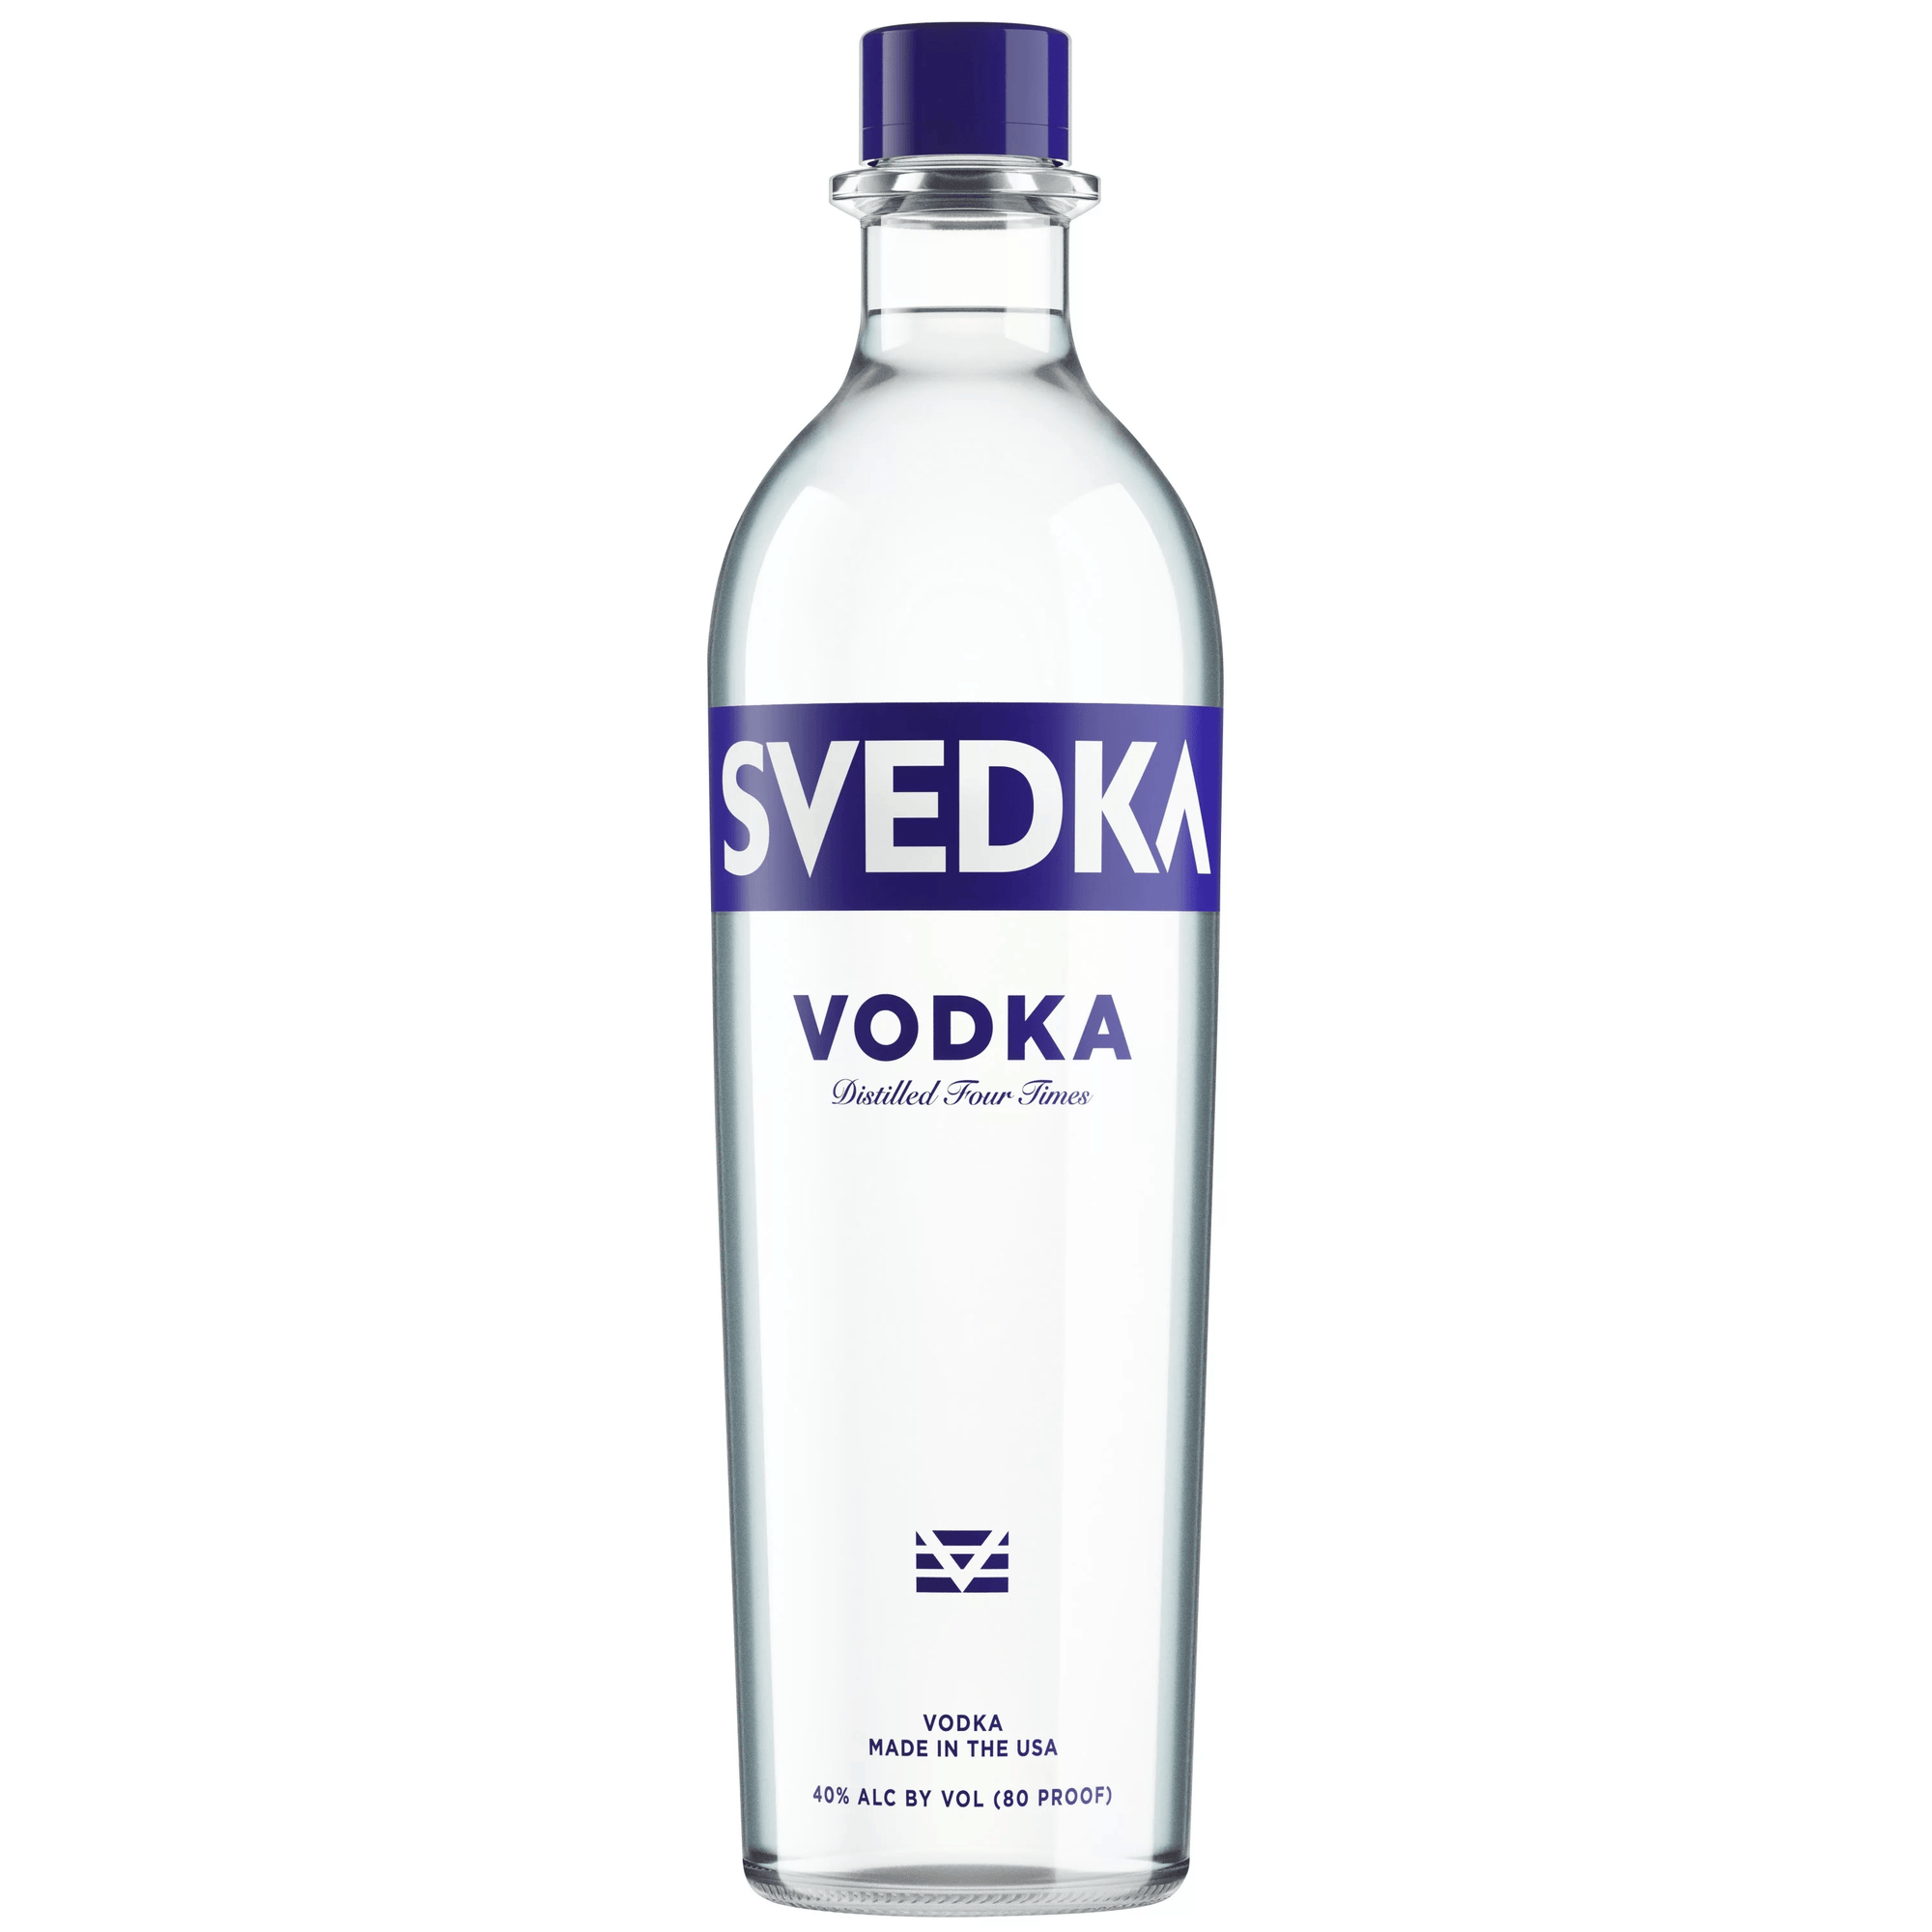 Svedka Vodka Gift Set